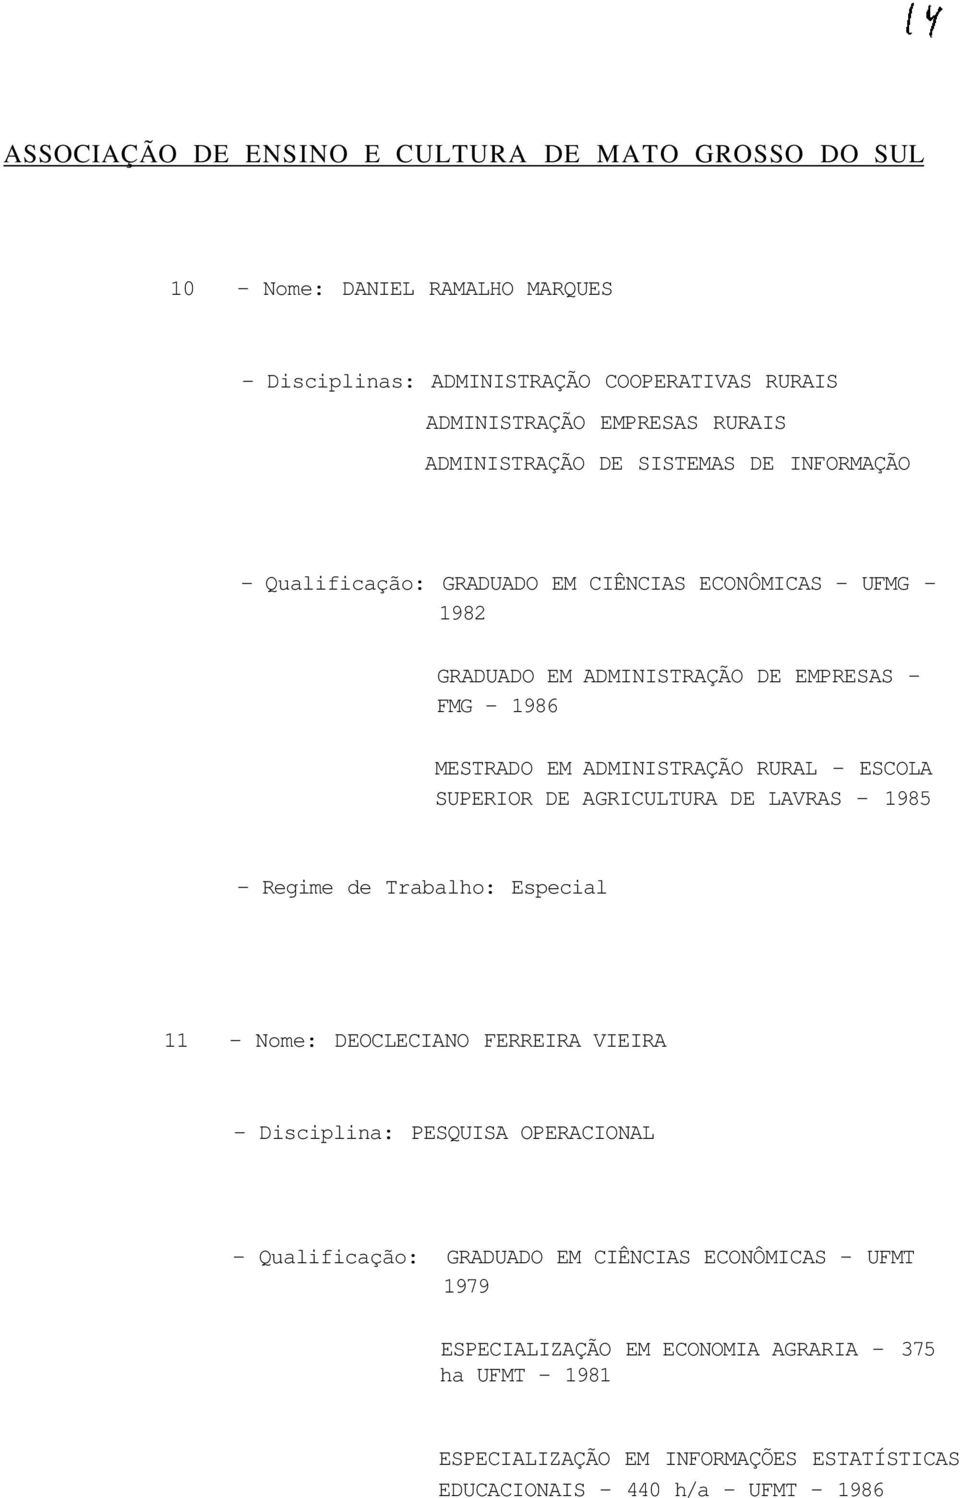 DE AGRICULTURA DE LAVRAS - 1985 - Regime de Trabalho: Especial 11 - Nome: DEOCLECIANO FERREIRA VIEIRA - Disciplina: PESQUISA OPERACIONAL - Qualificação: GRADUADO